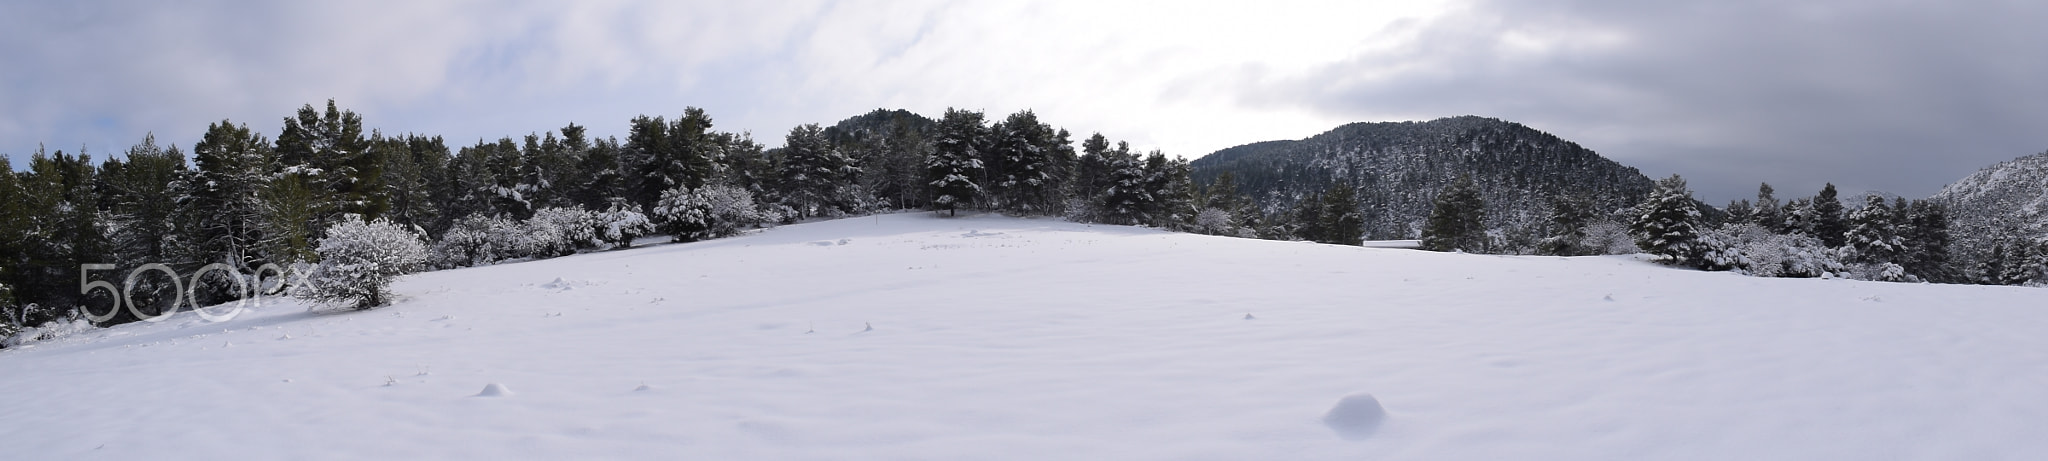 Snow panorama